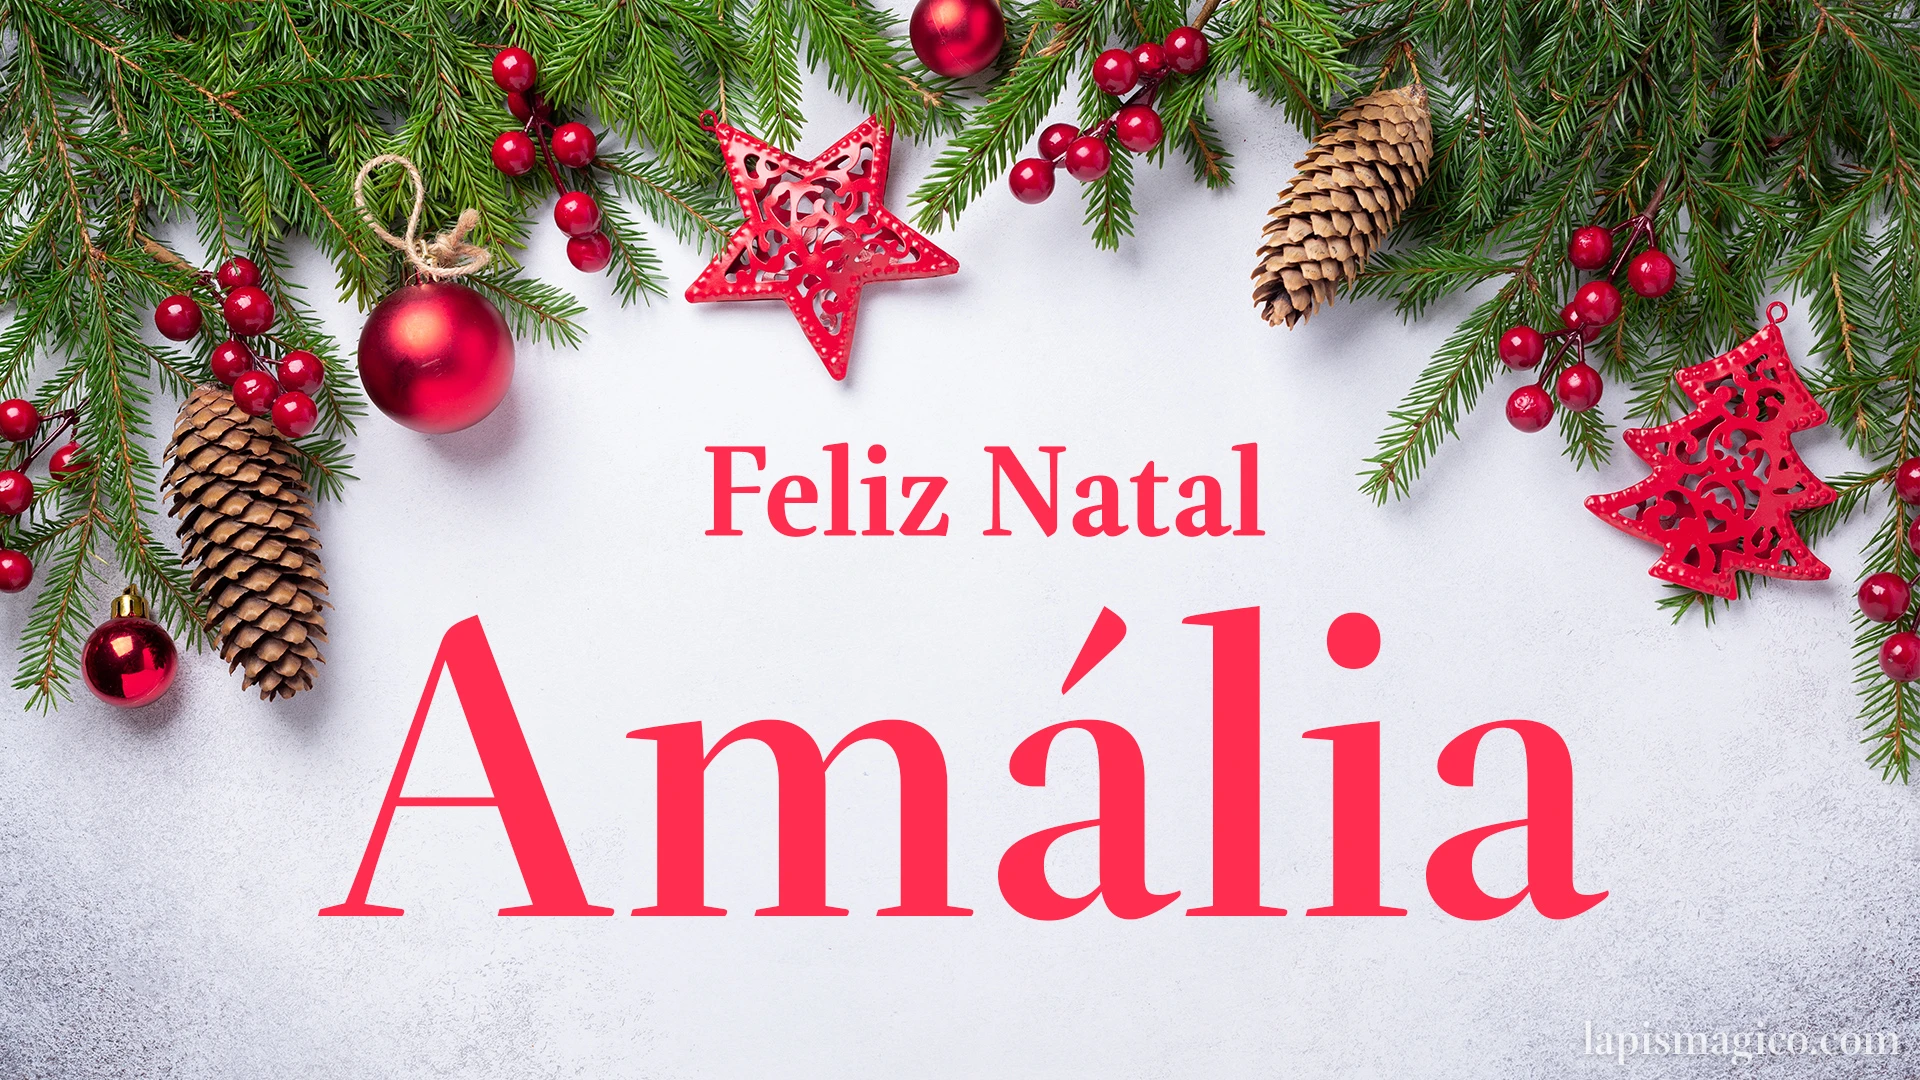 Oh Amália, cinco postais de Feliz Natal Postal com o teu nome